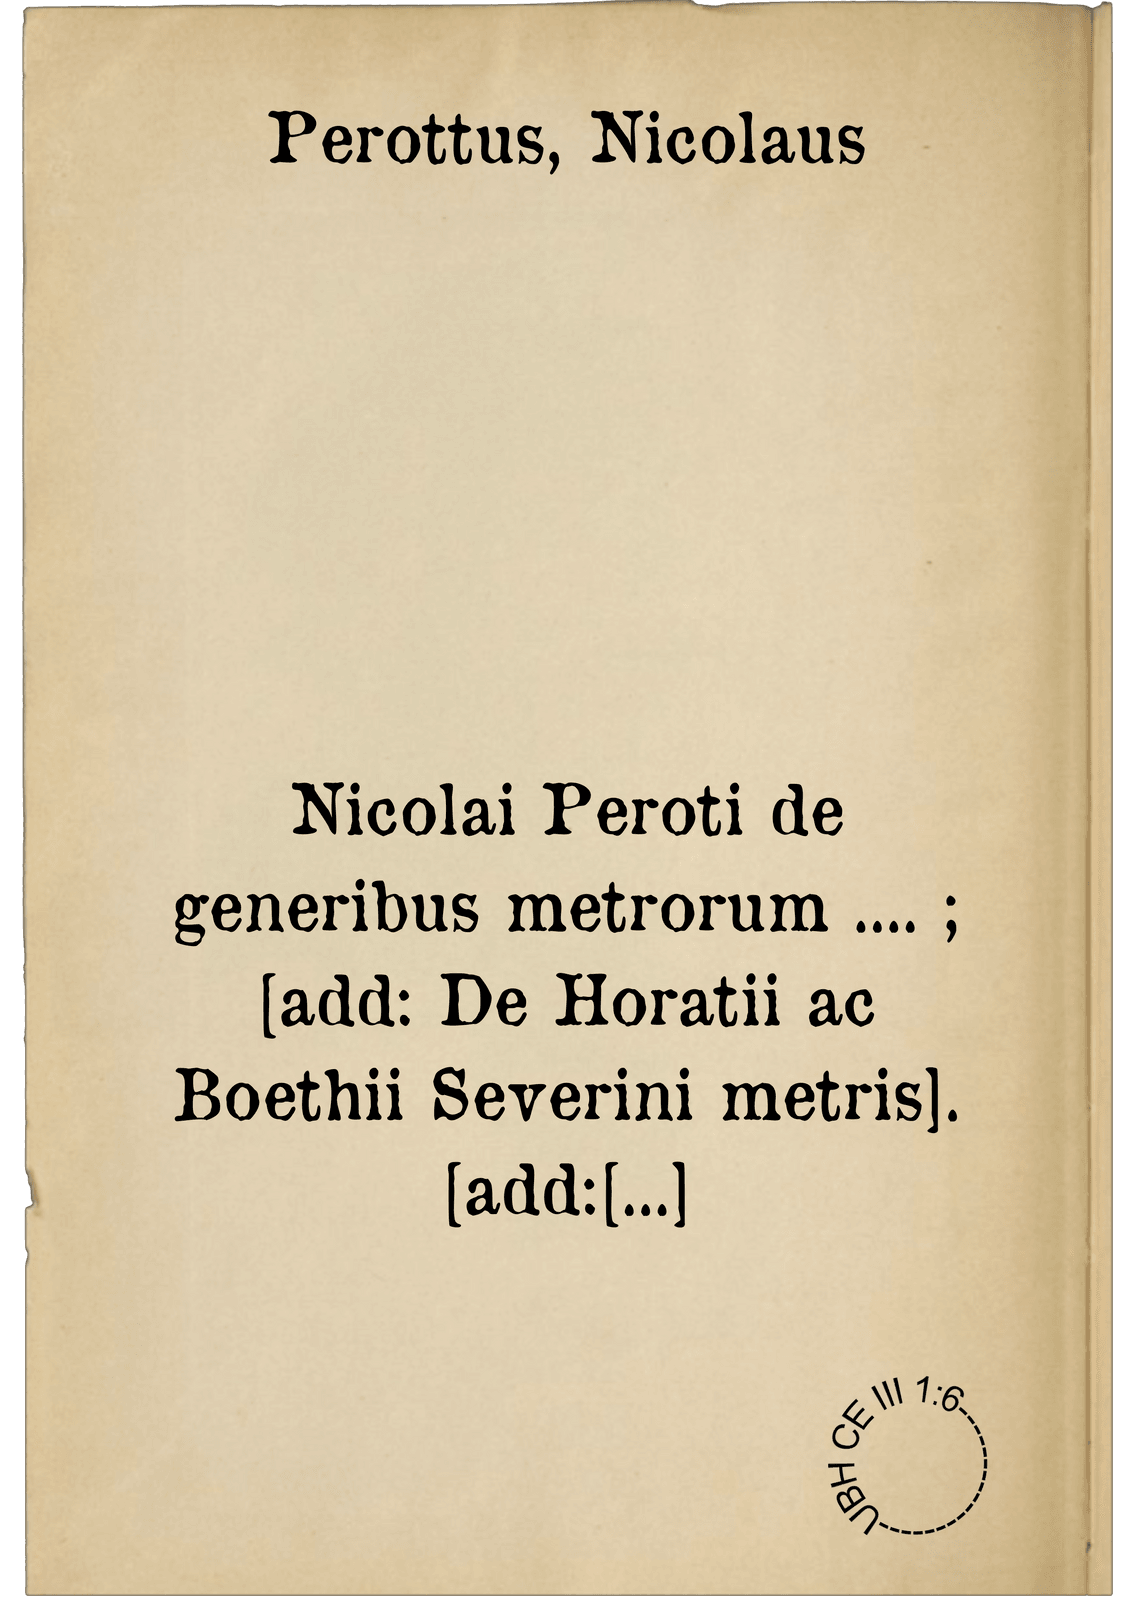 Nicolai Peroti de generibus metrorum .... ; [add: De Horatii ac Boethii Severini metris]. [add: Jusiurandum]